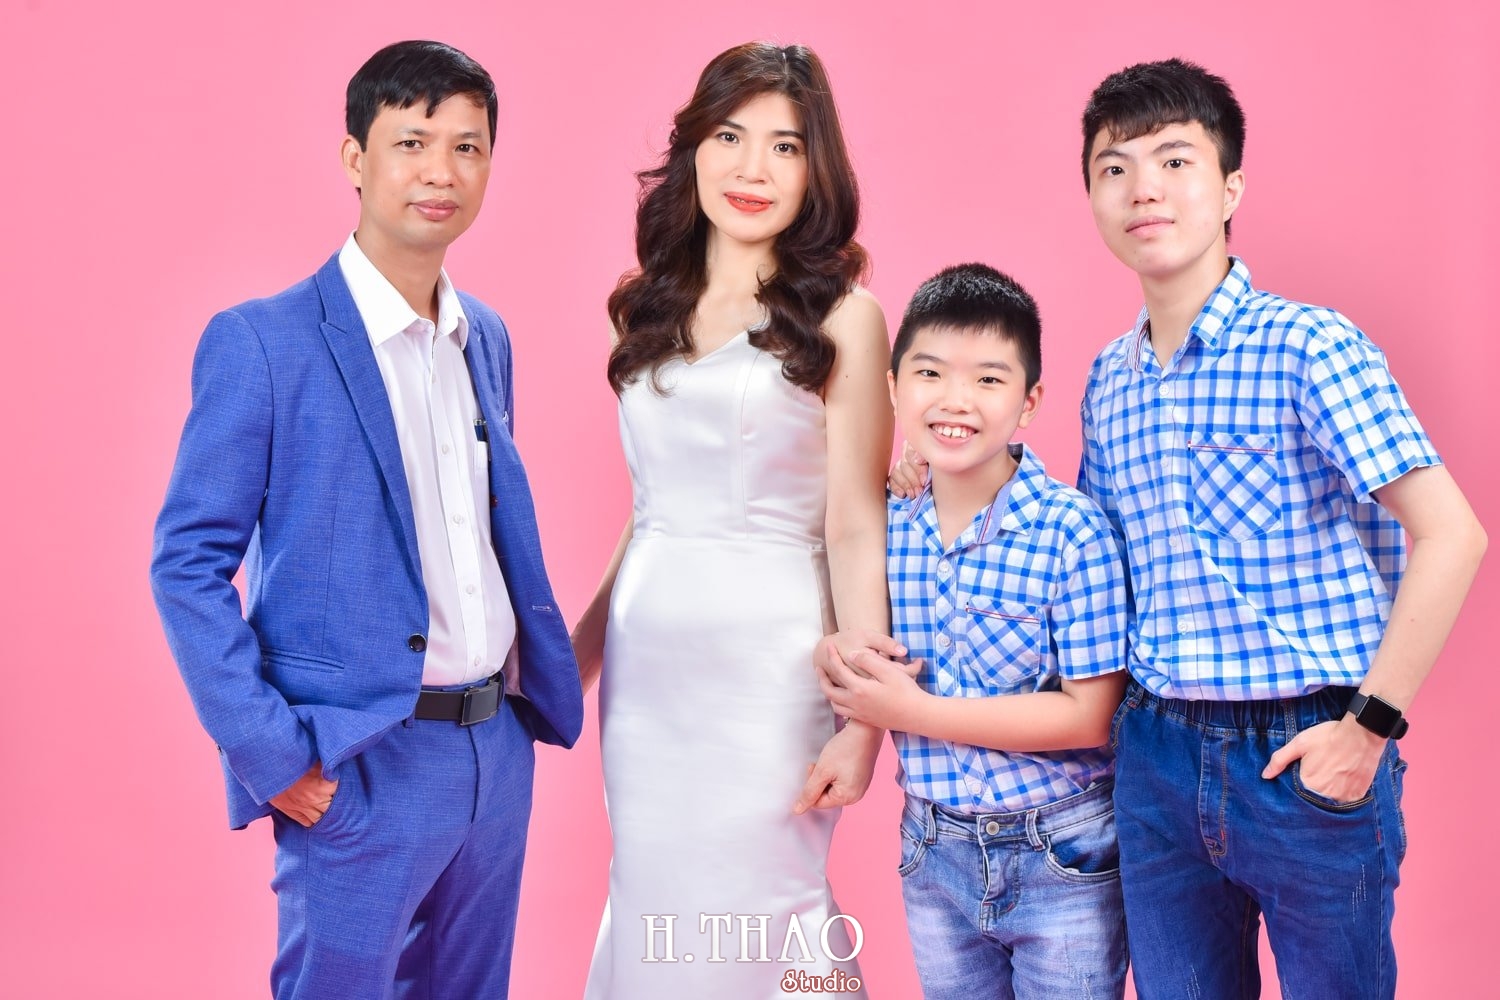 Anh gia dinh 4 nguoi 20 min - Chụp ảnh kỷ niệm 15 năm ngày cưới gia đình chị Tho- HThao Studio